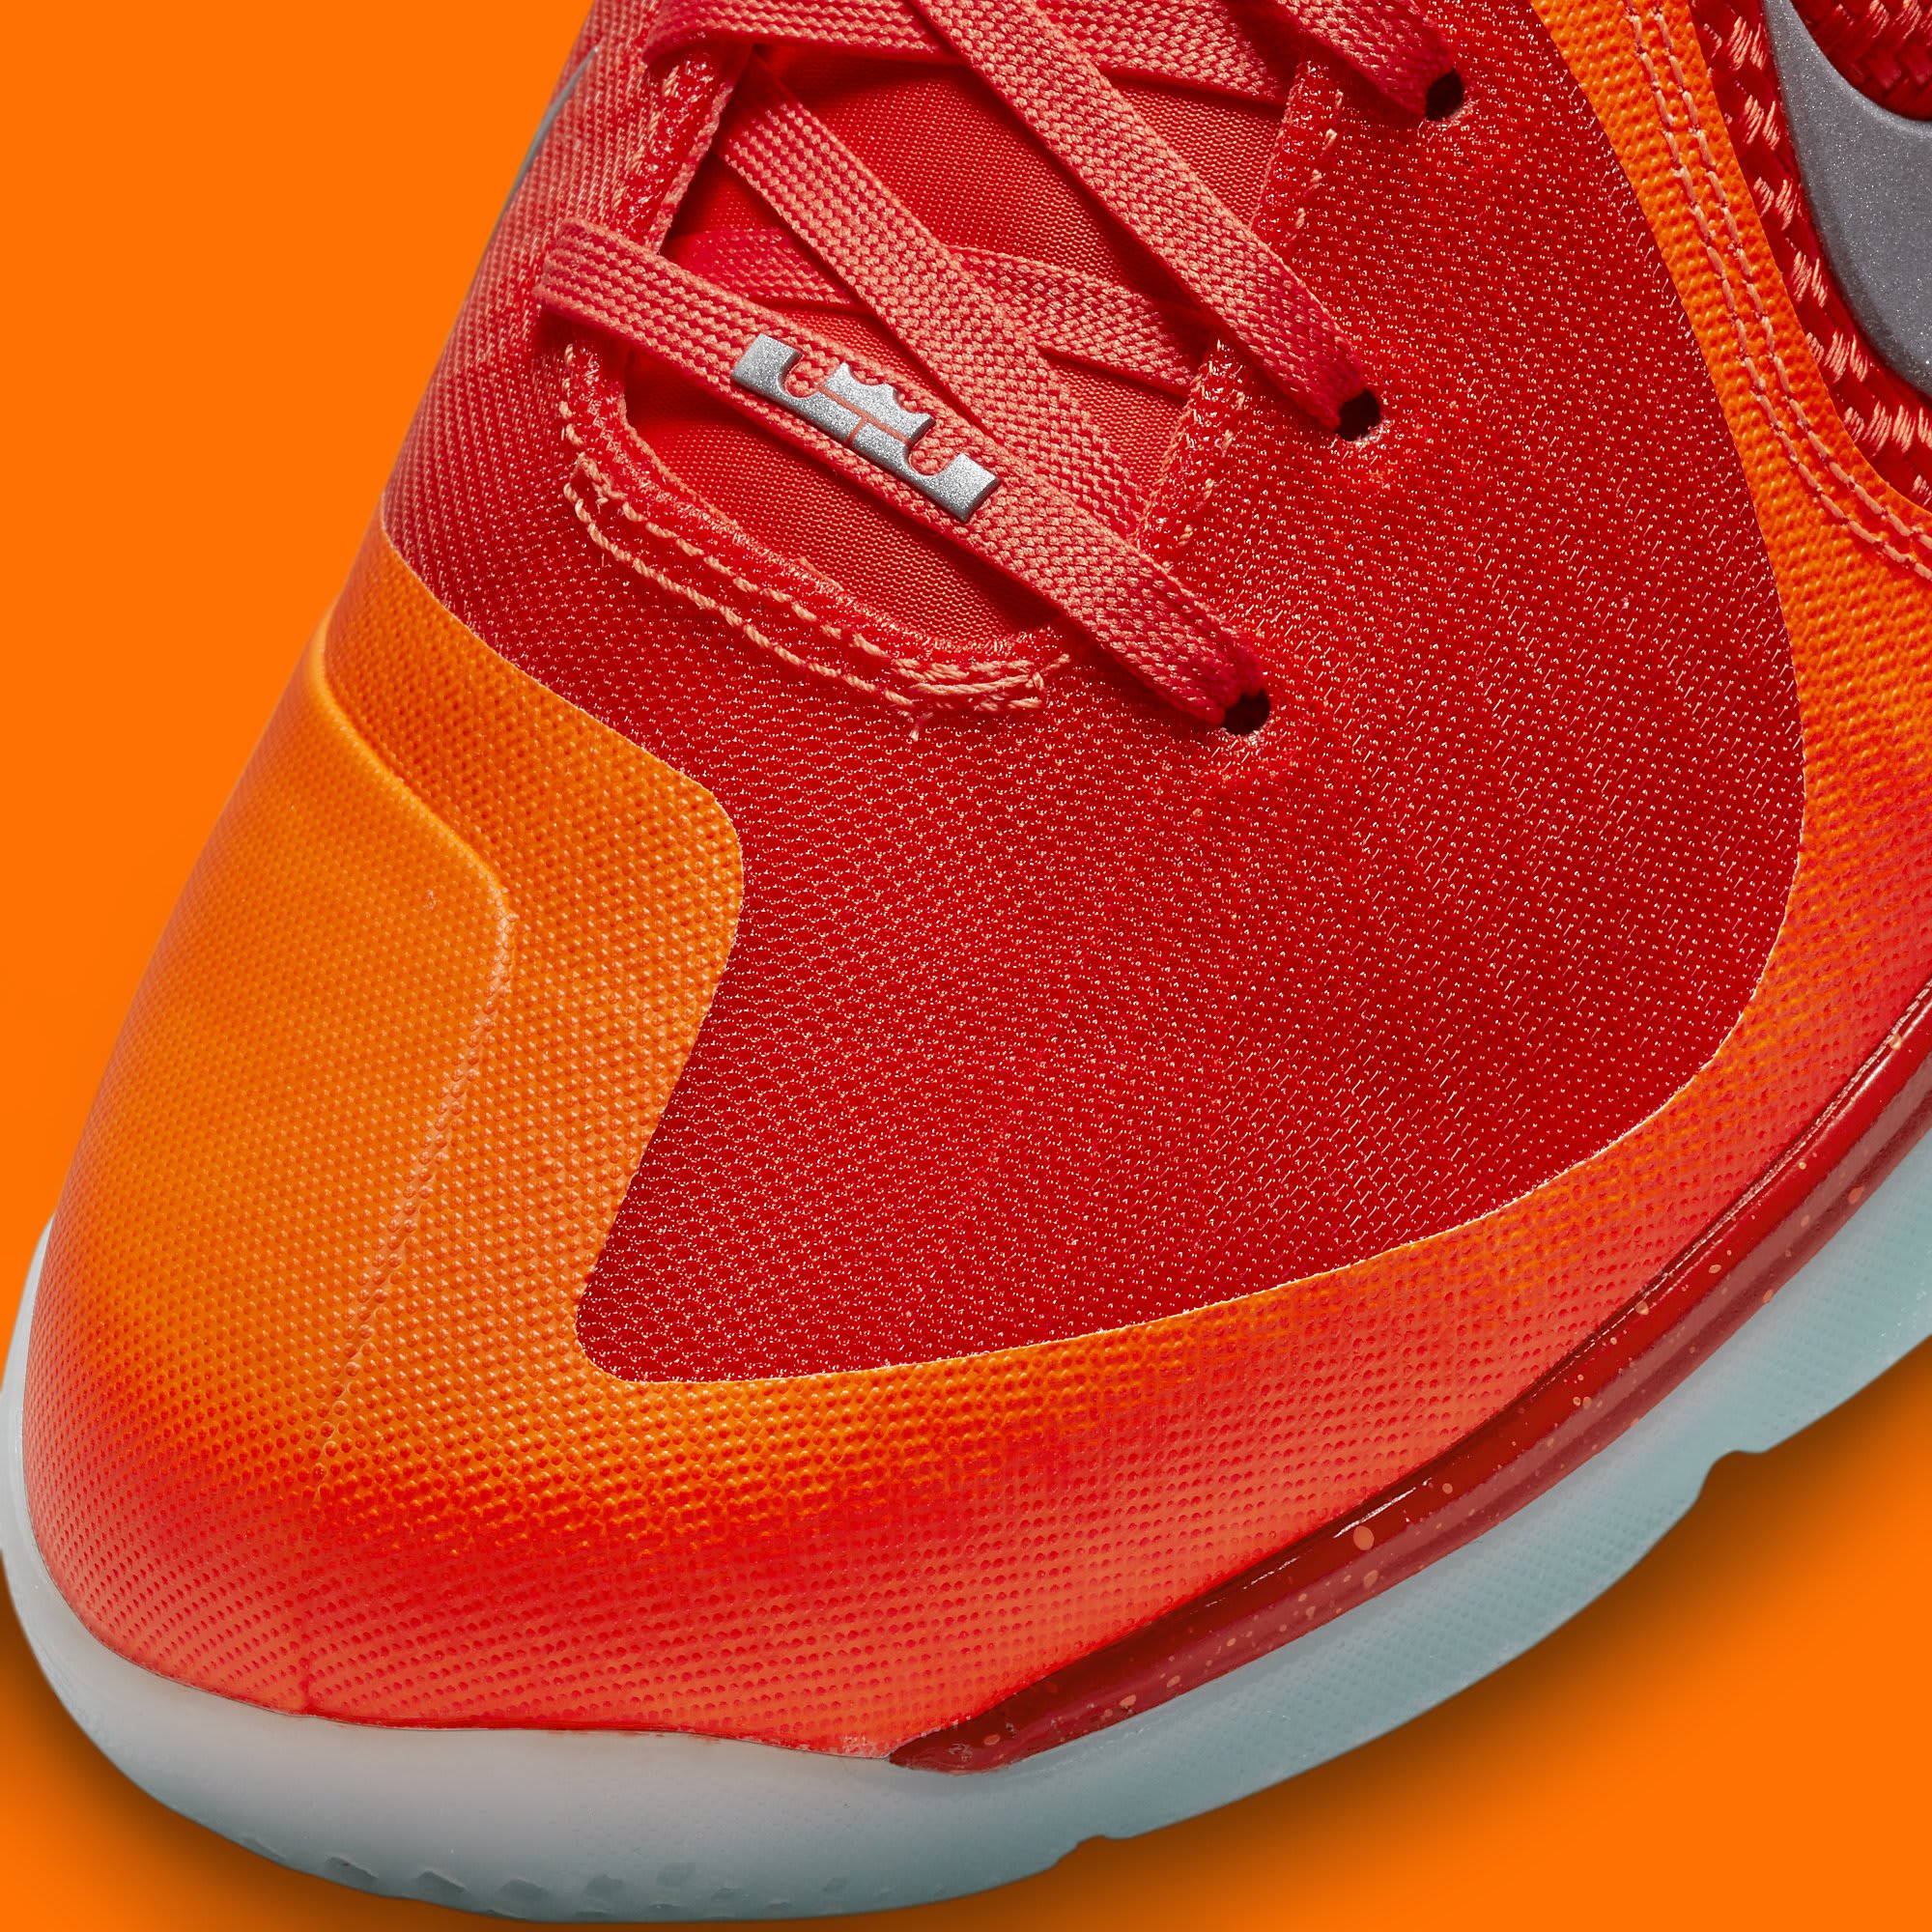 Nike LeBron 9 'Big Bang' 2022 DH8006 800 Toe